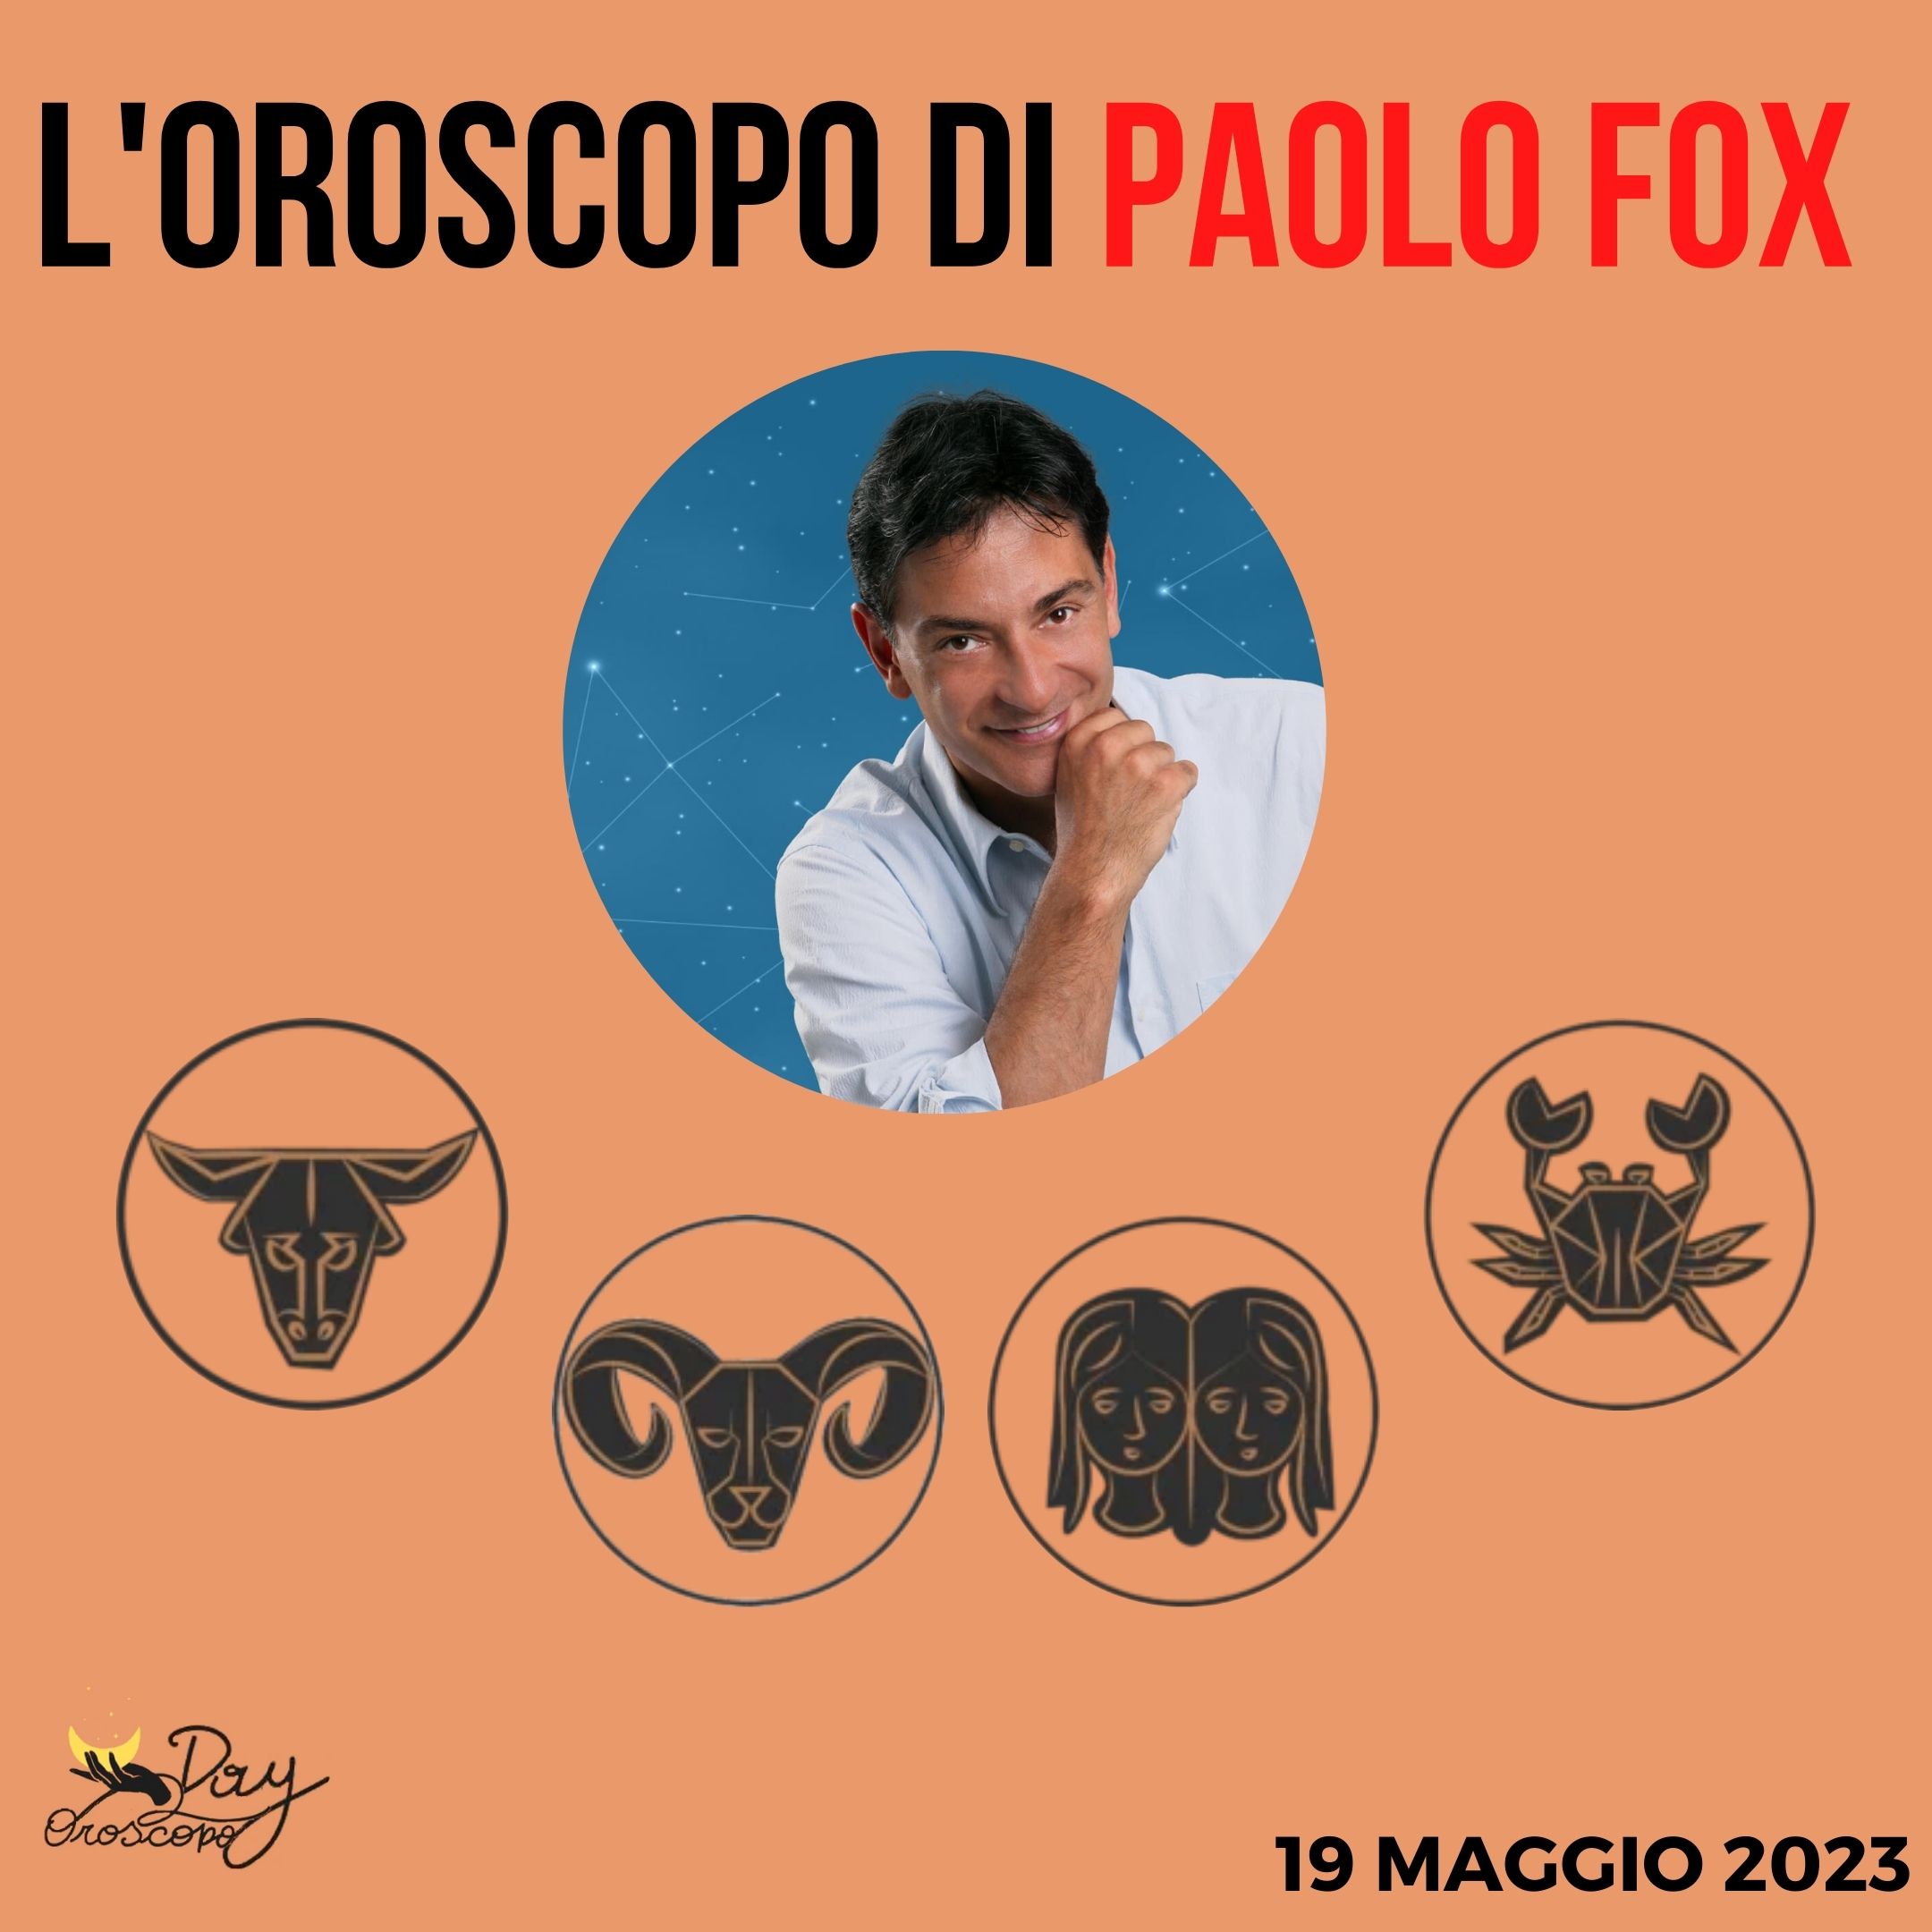 Oroscopo oggi domani Paolo Fox 19 maggio Toro Ariete Gemelli Cancro